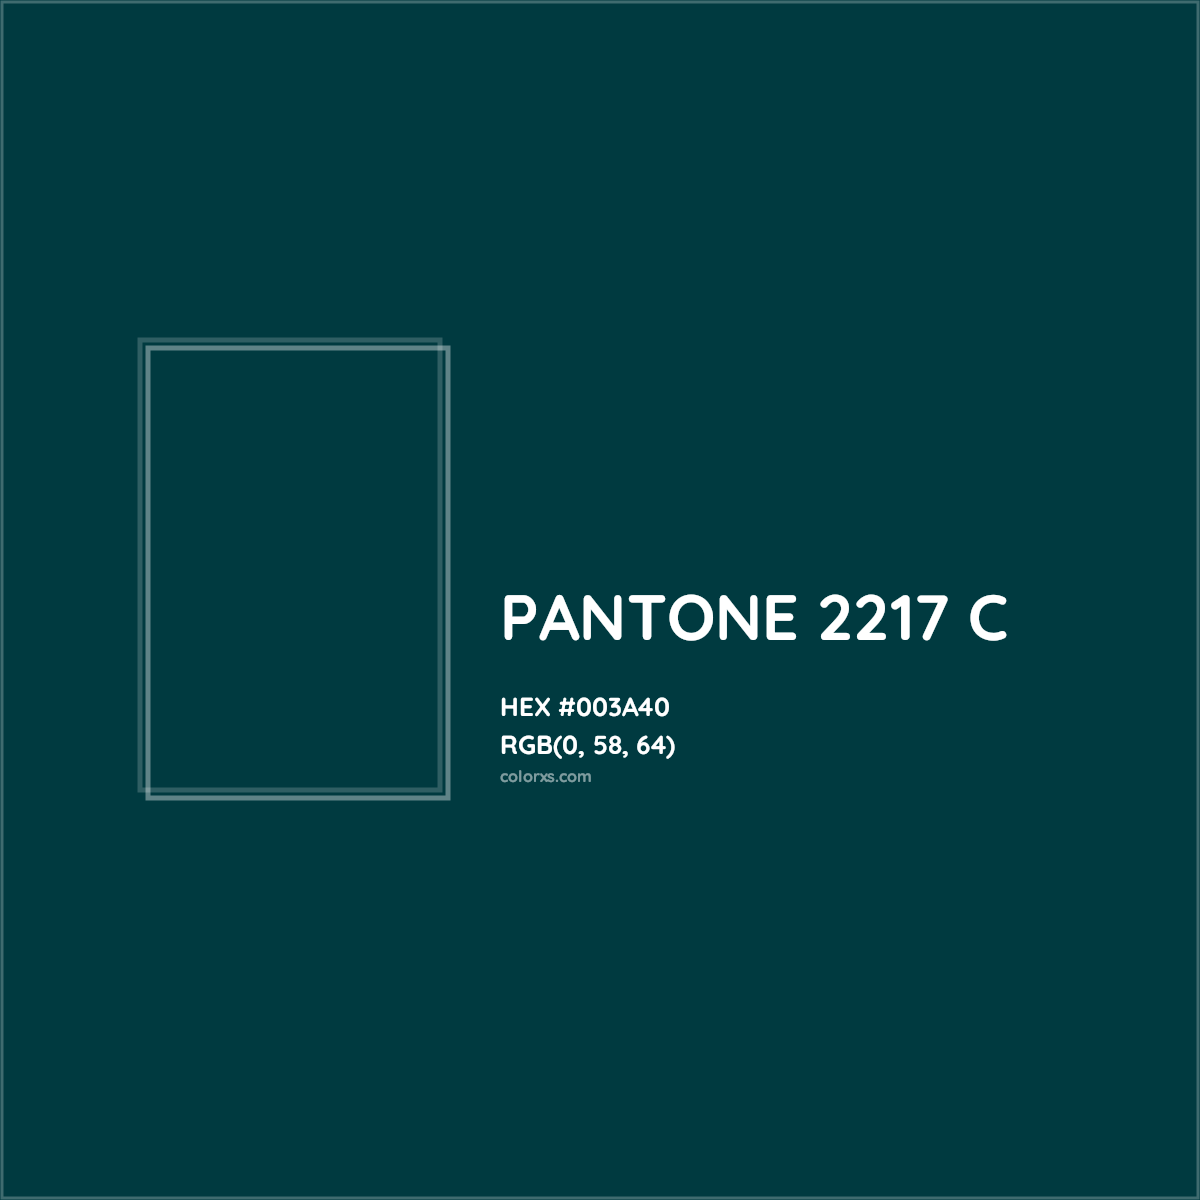 HEX #003A40 PANTONE 2217 C CMS Pantone PMS - Color Code